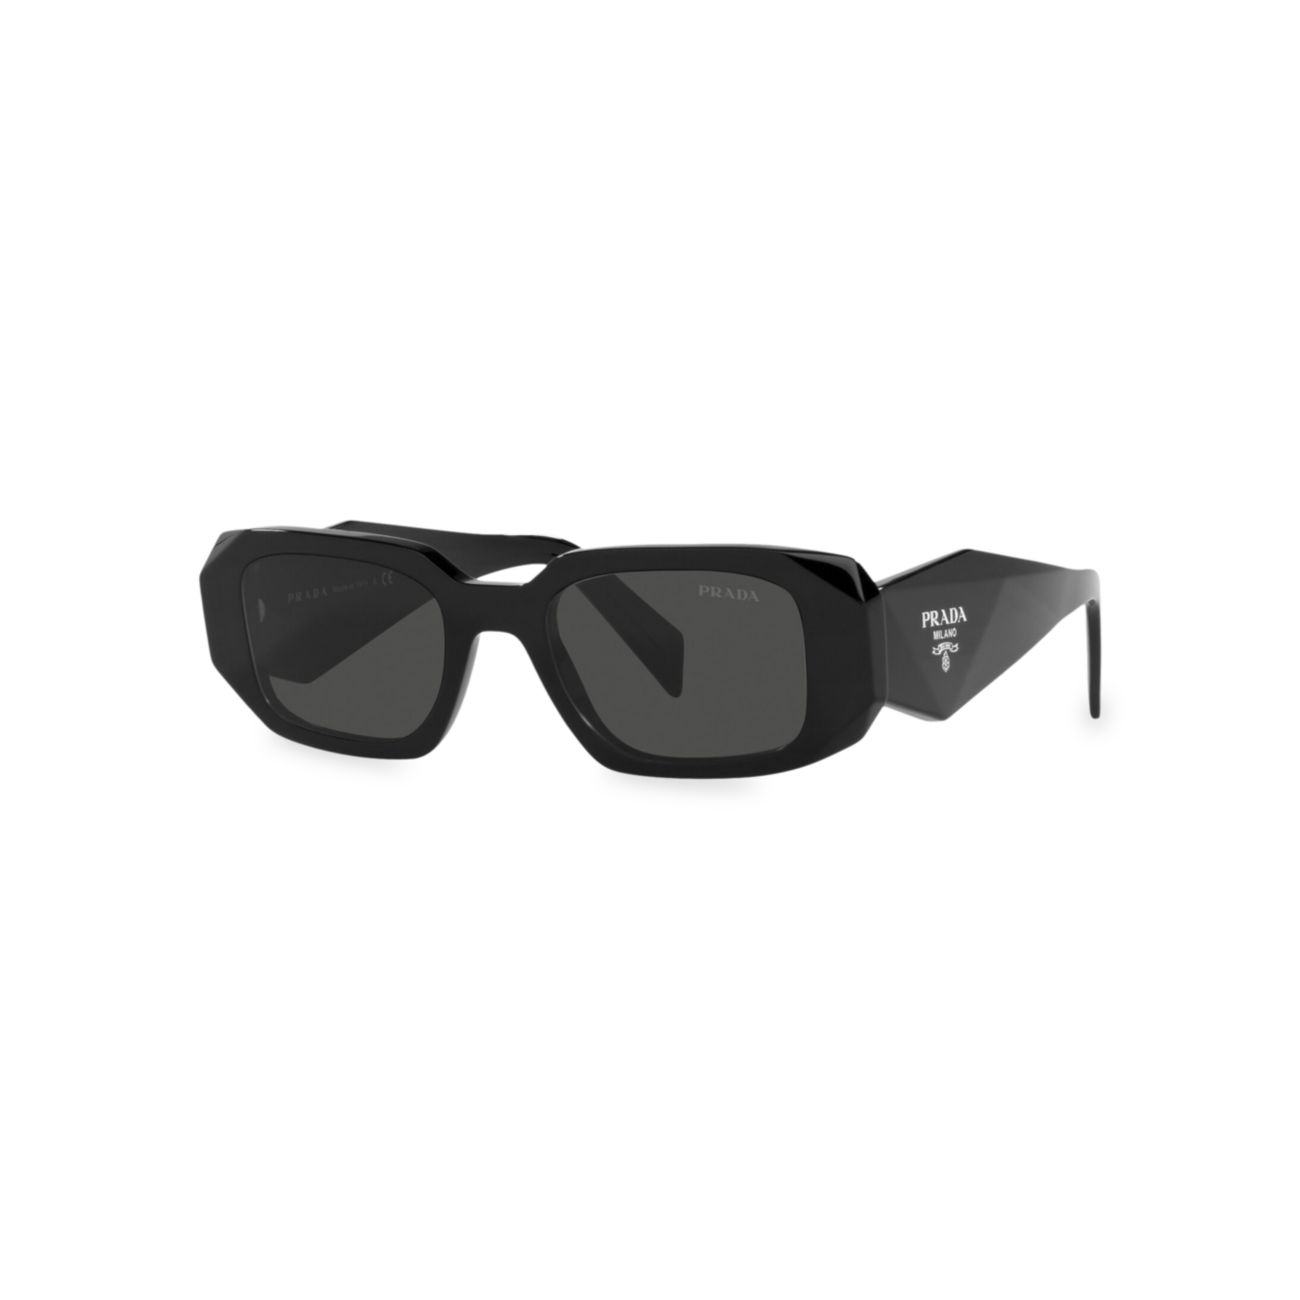 Прямоугольные солнцезащитные очки Symbole 49 мм Prada